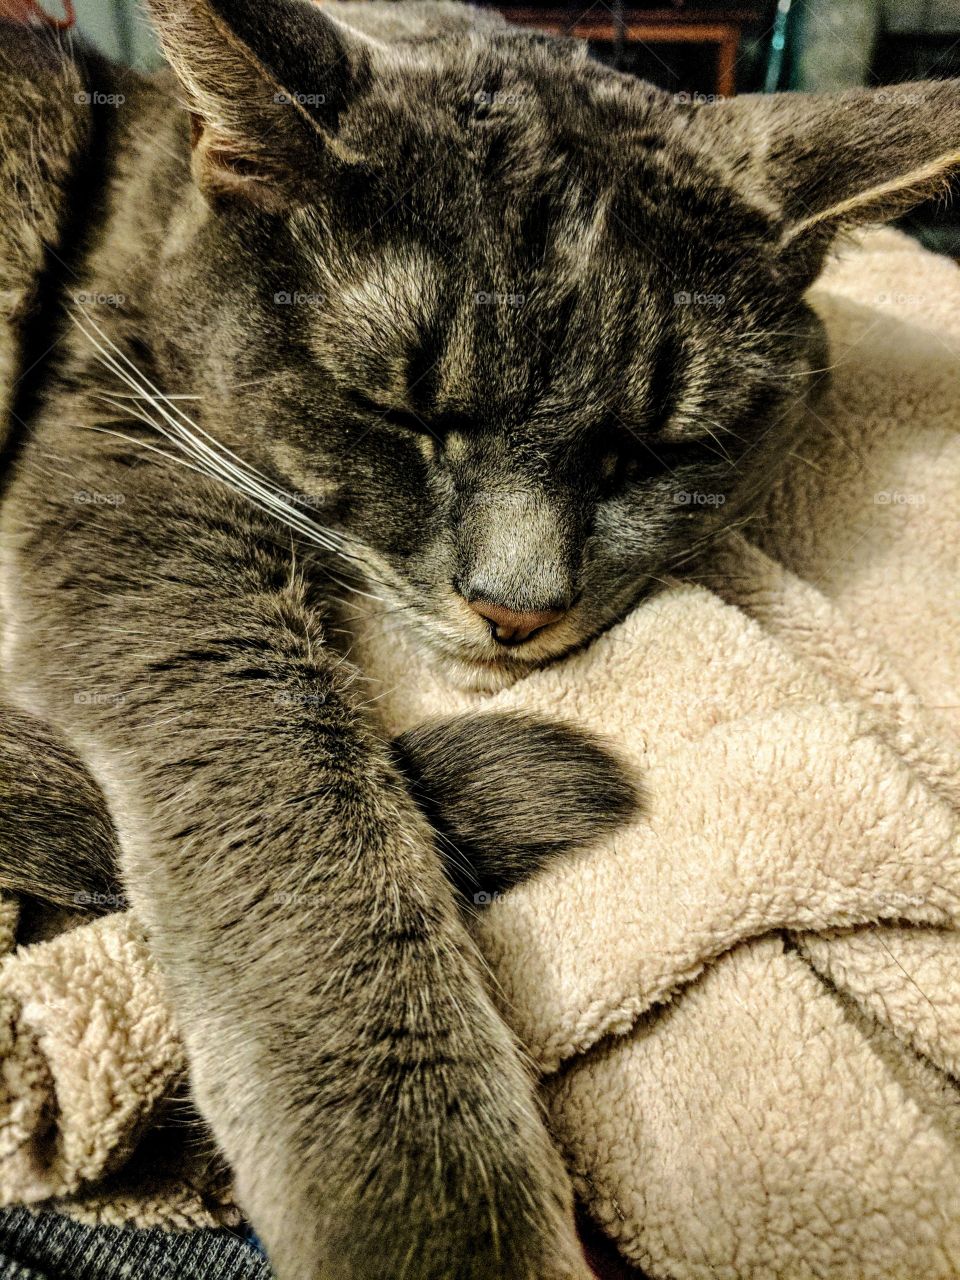 Sleeping Cat On Being Blanket